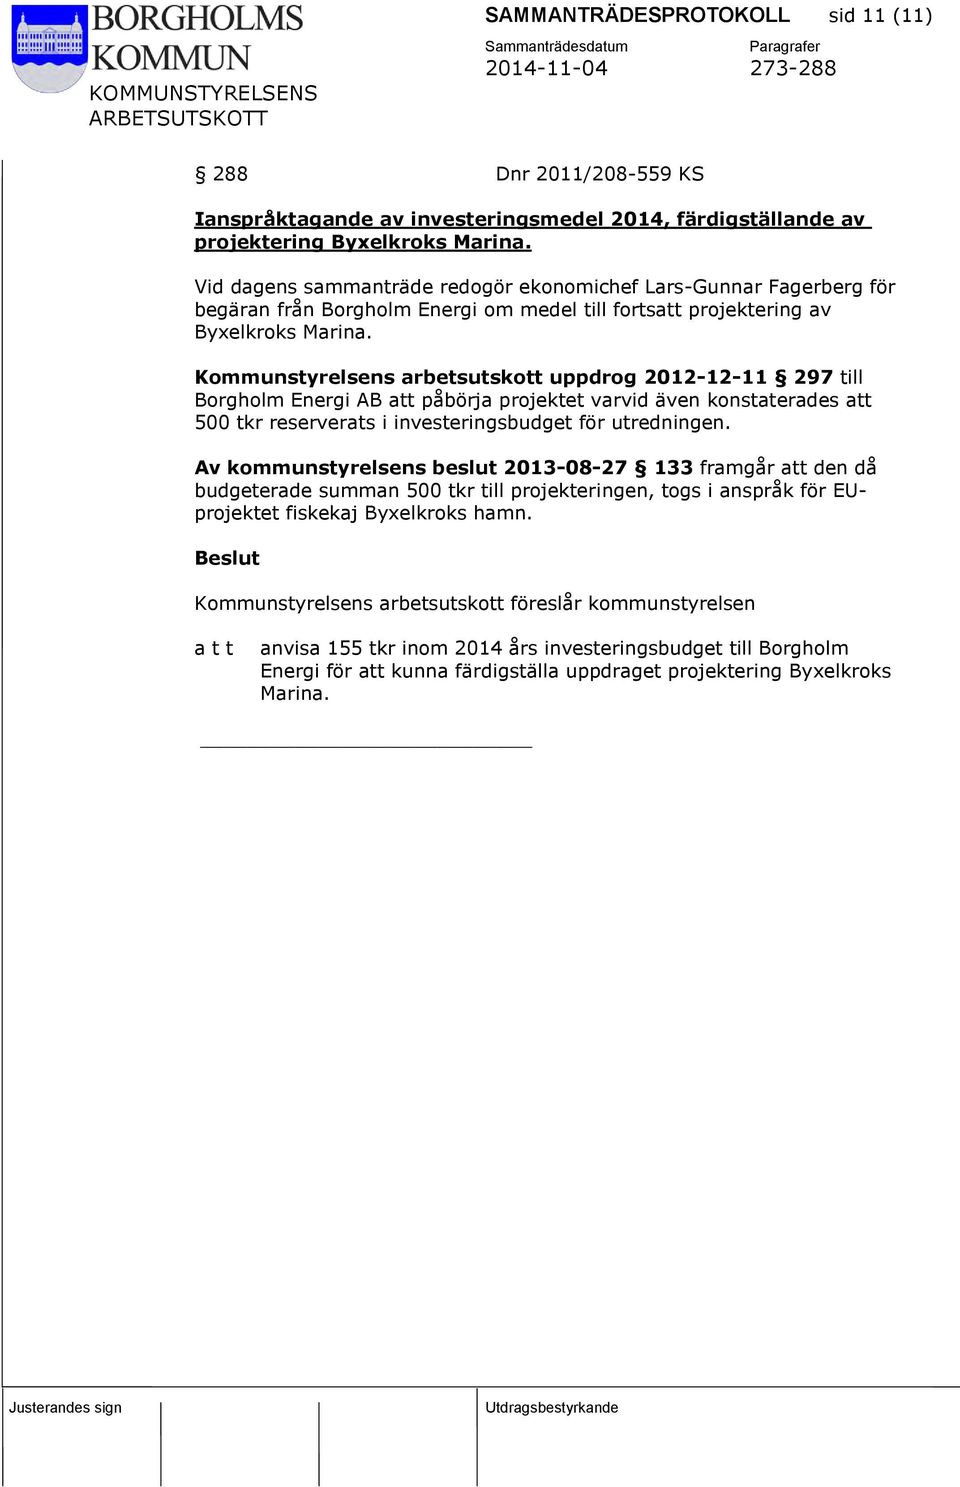 Kommunstyrelsens arbetsutskott uppdrog 2012-12-11 297 till Borgholm Energi AB att påbörja projektet varvid även konstaterades att 500 tkr reserverats i investeringsbudget för utredningen.